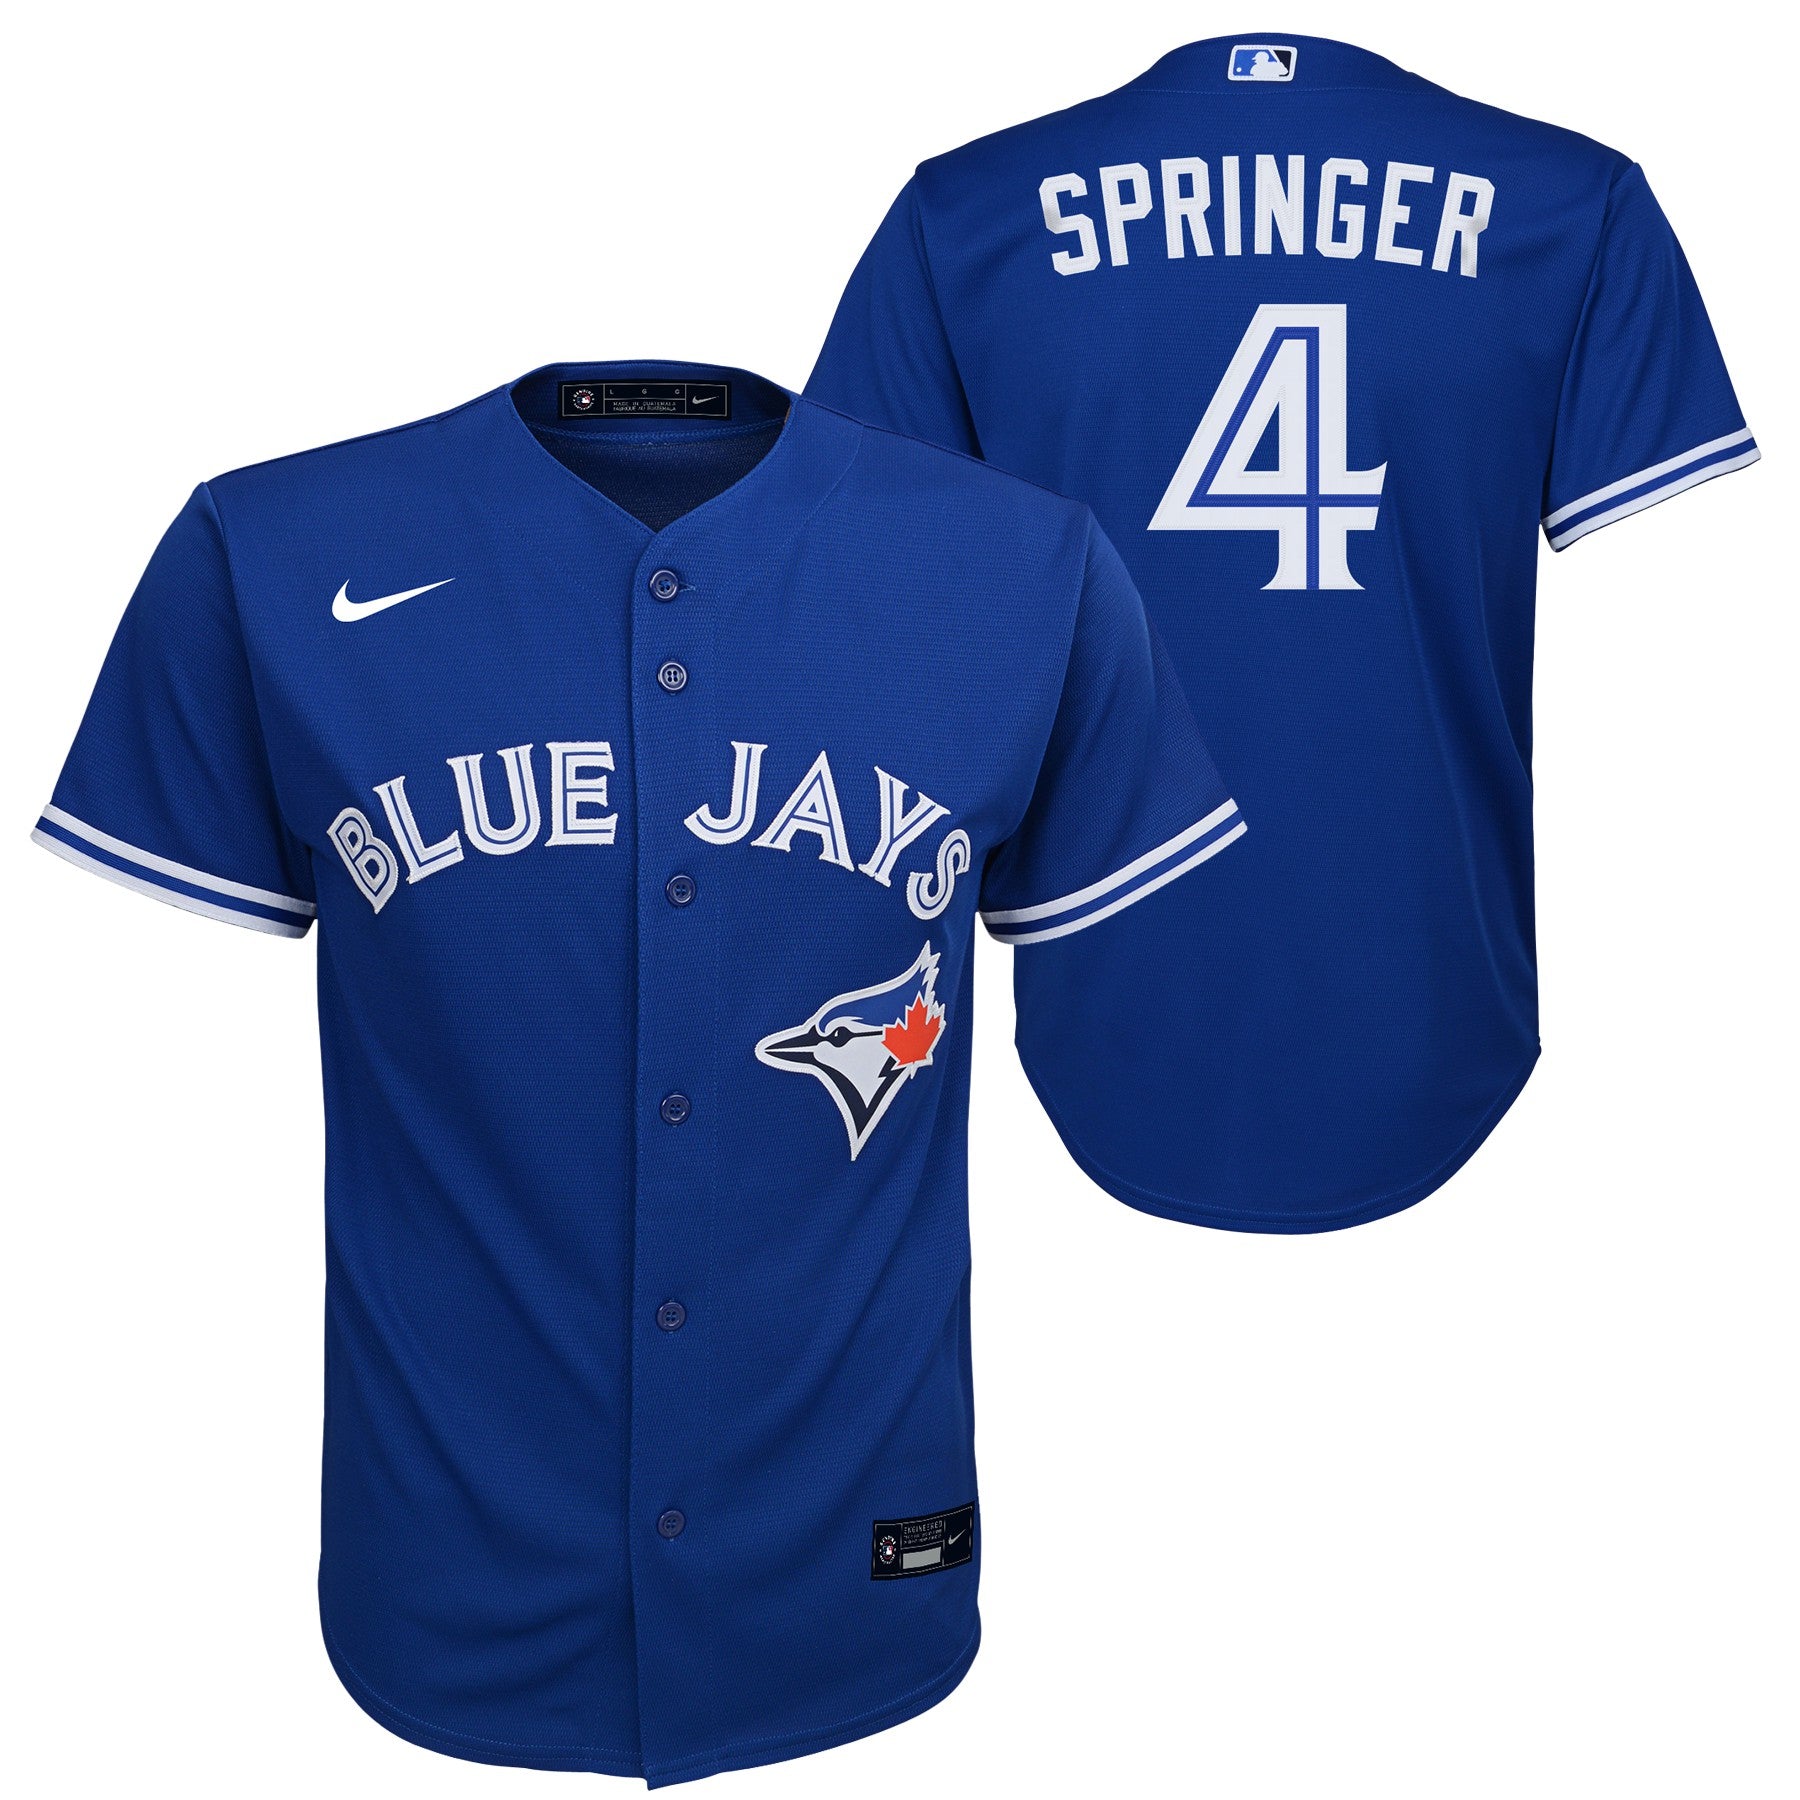 George Springer Jersey  George Springer Toronto Blue Jays Jerseys & Shirts  - Blue Jays Store